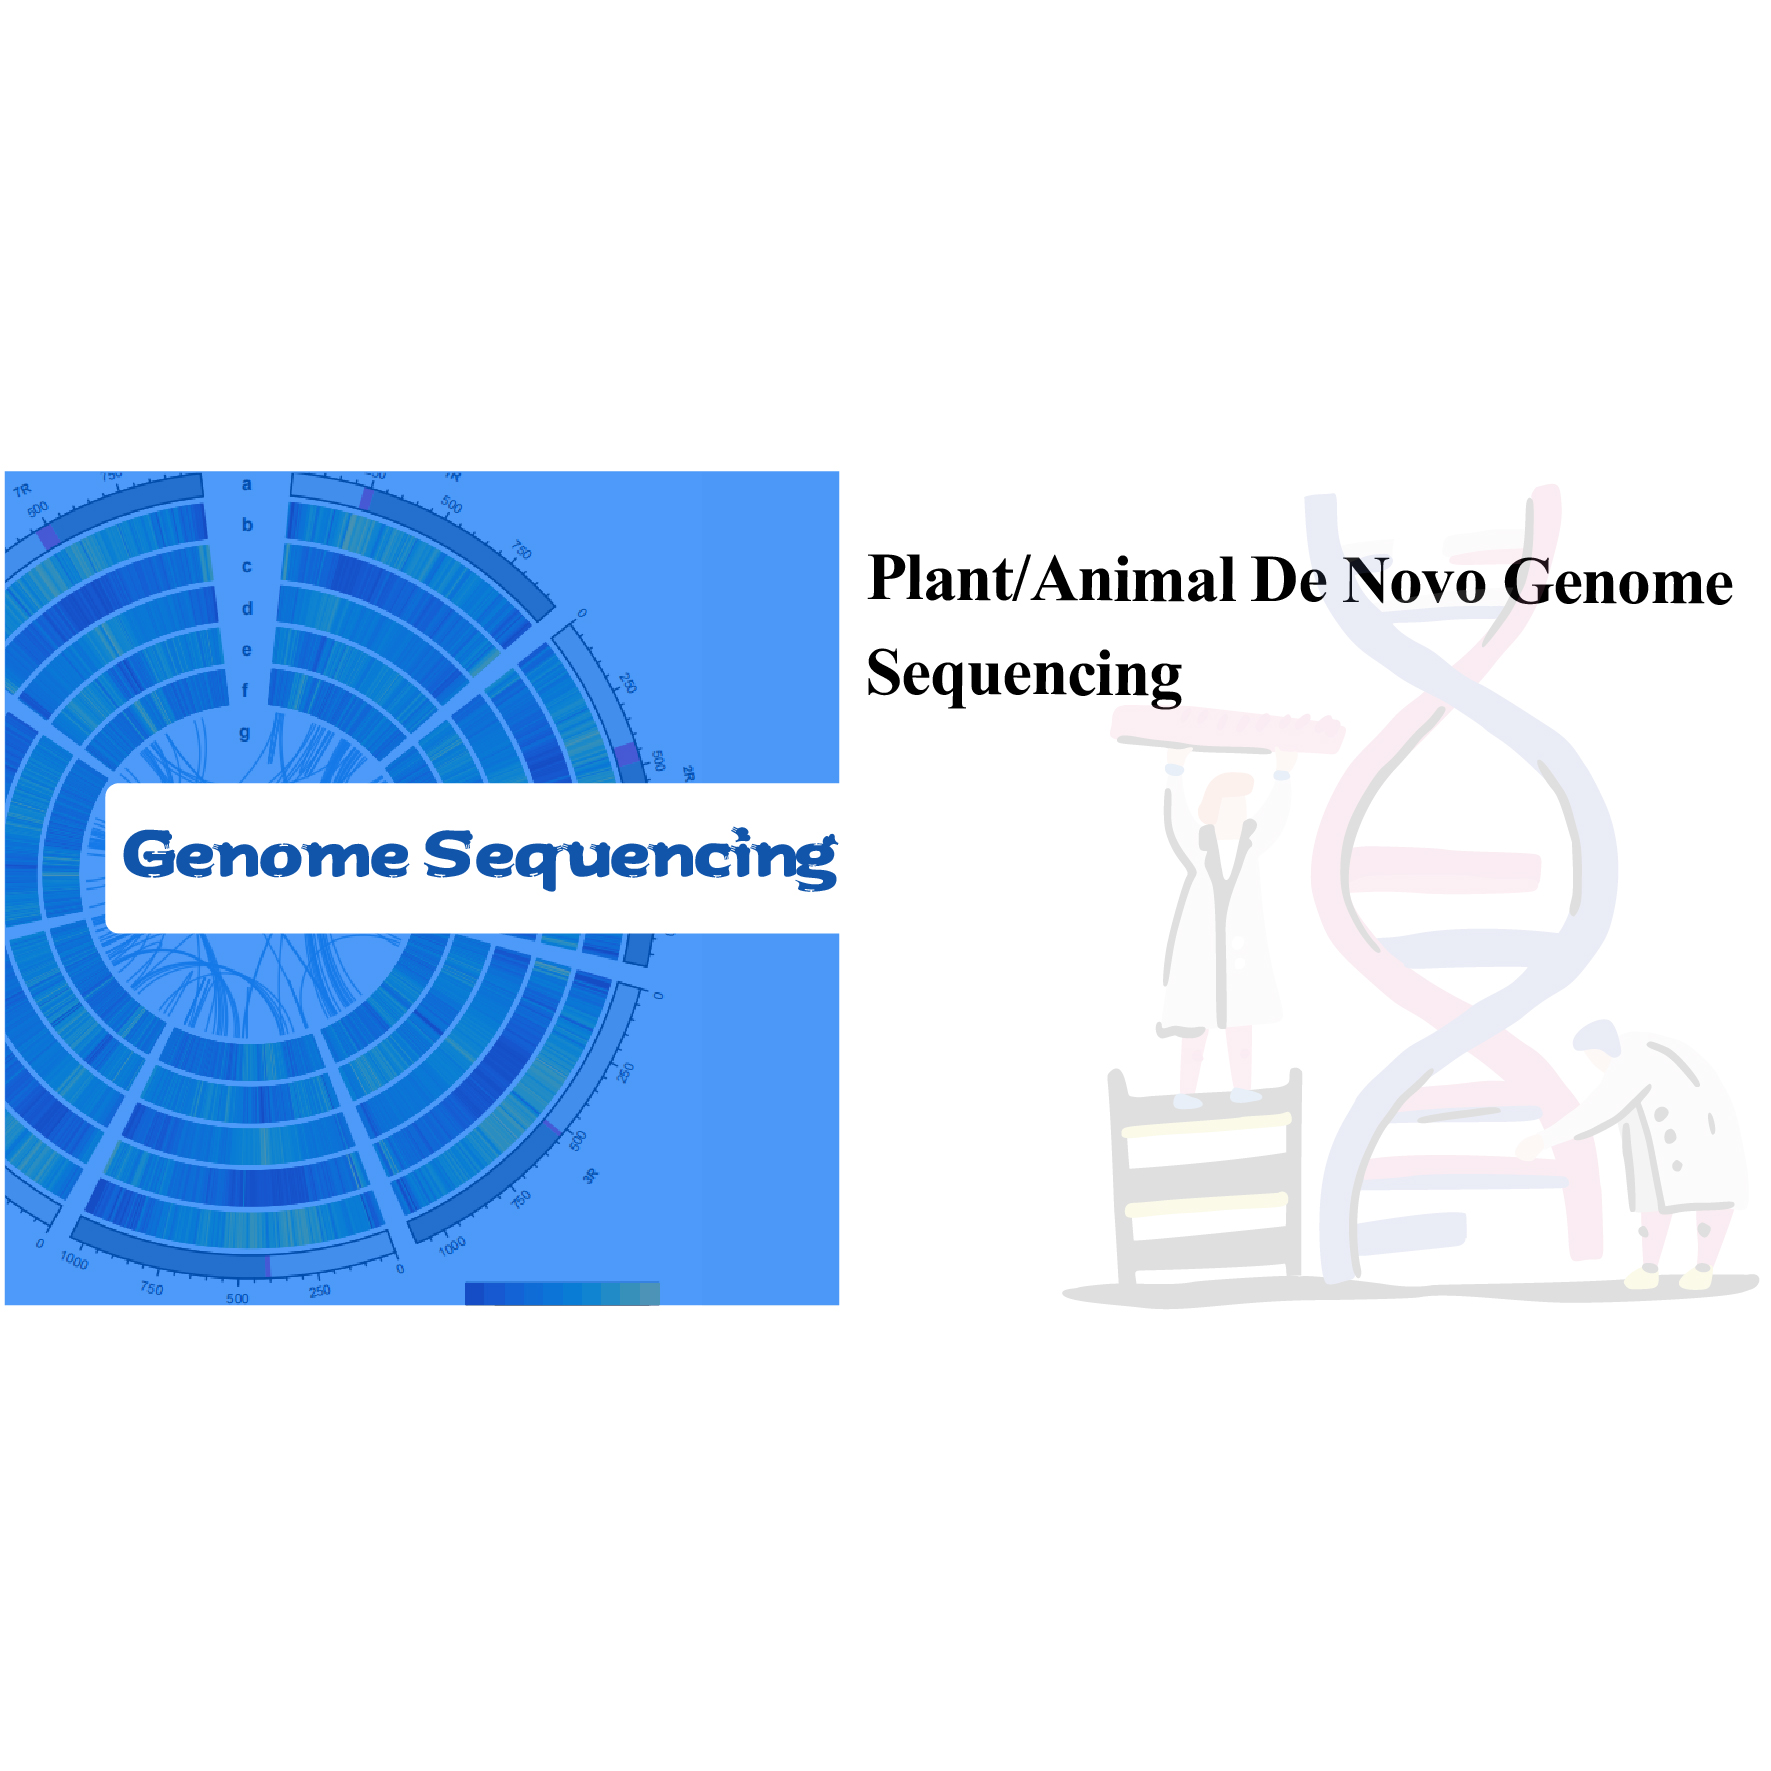 Plant/Animal De Novo Genome Sequencing